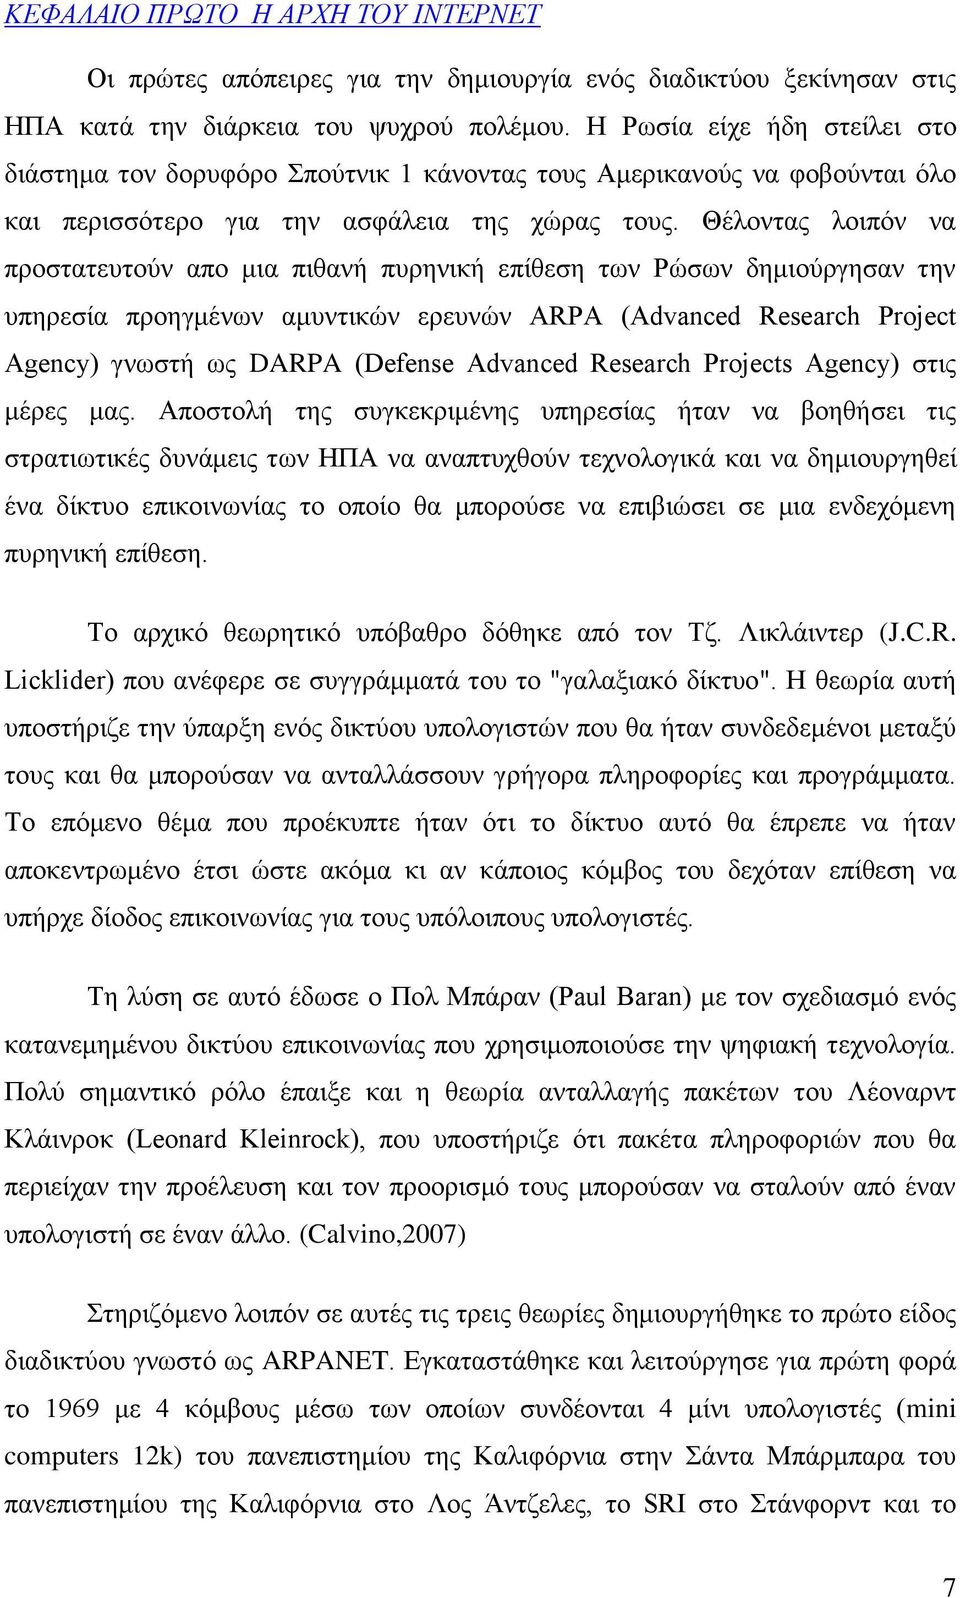 Θέλοντας λοιπόν να προστατευτούν απο μια πιθανή πυρηνική επίθεση των Ρώσων δημιούργησαν την υπηρεσία προηγμένων αμυντικών ερευνών ARPA (Advanced Research Project Agency) γνωστή ως DARPA (Defense